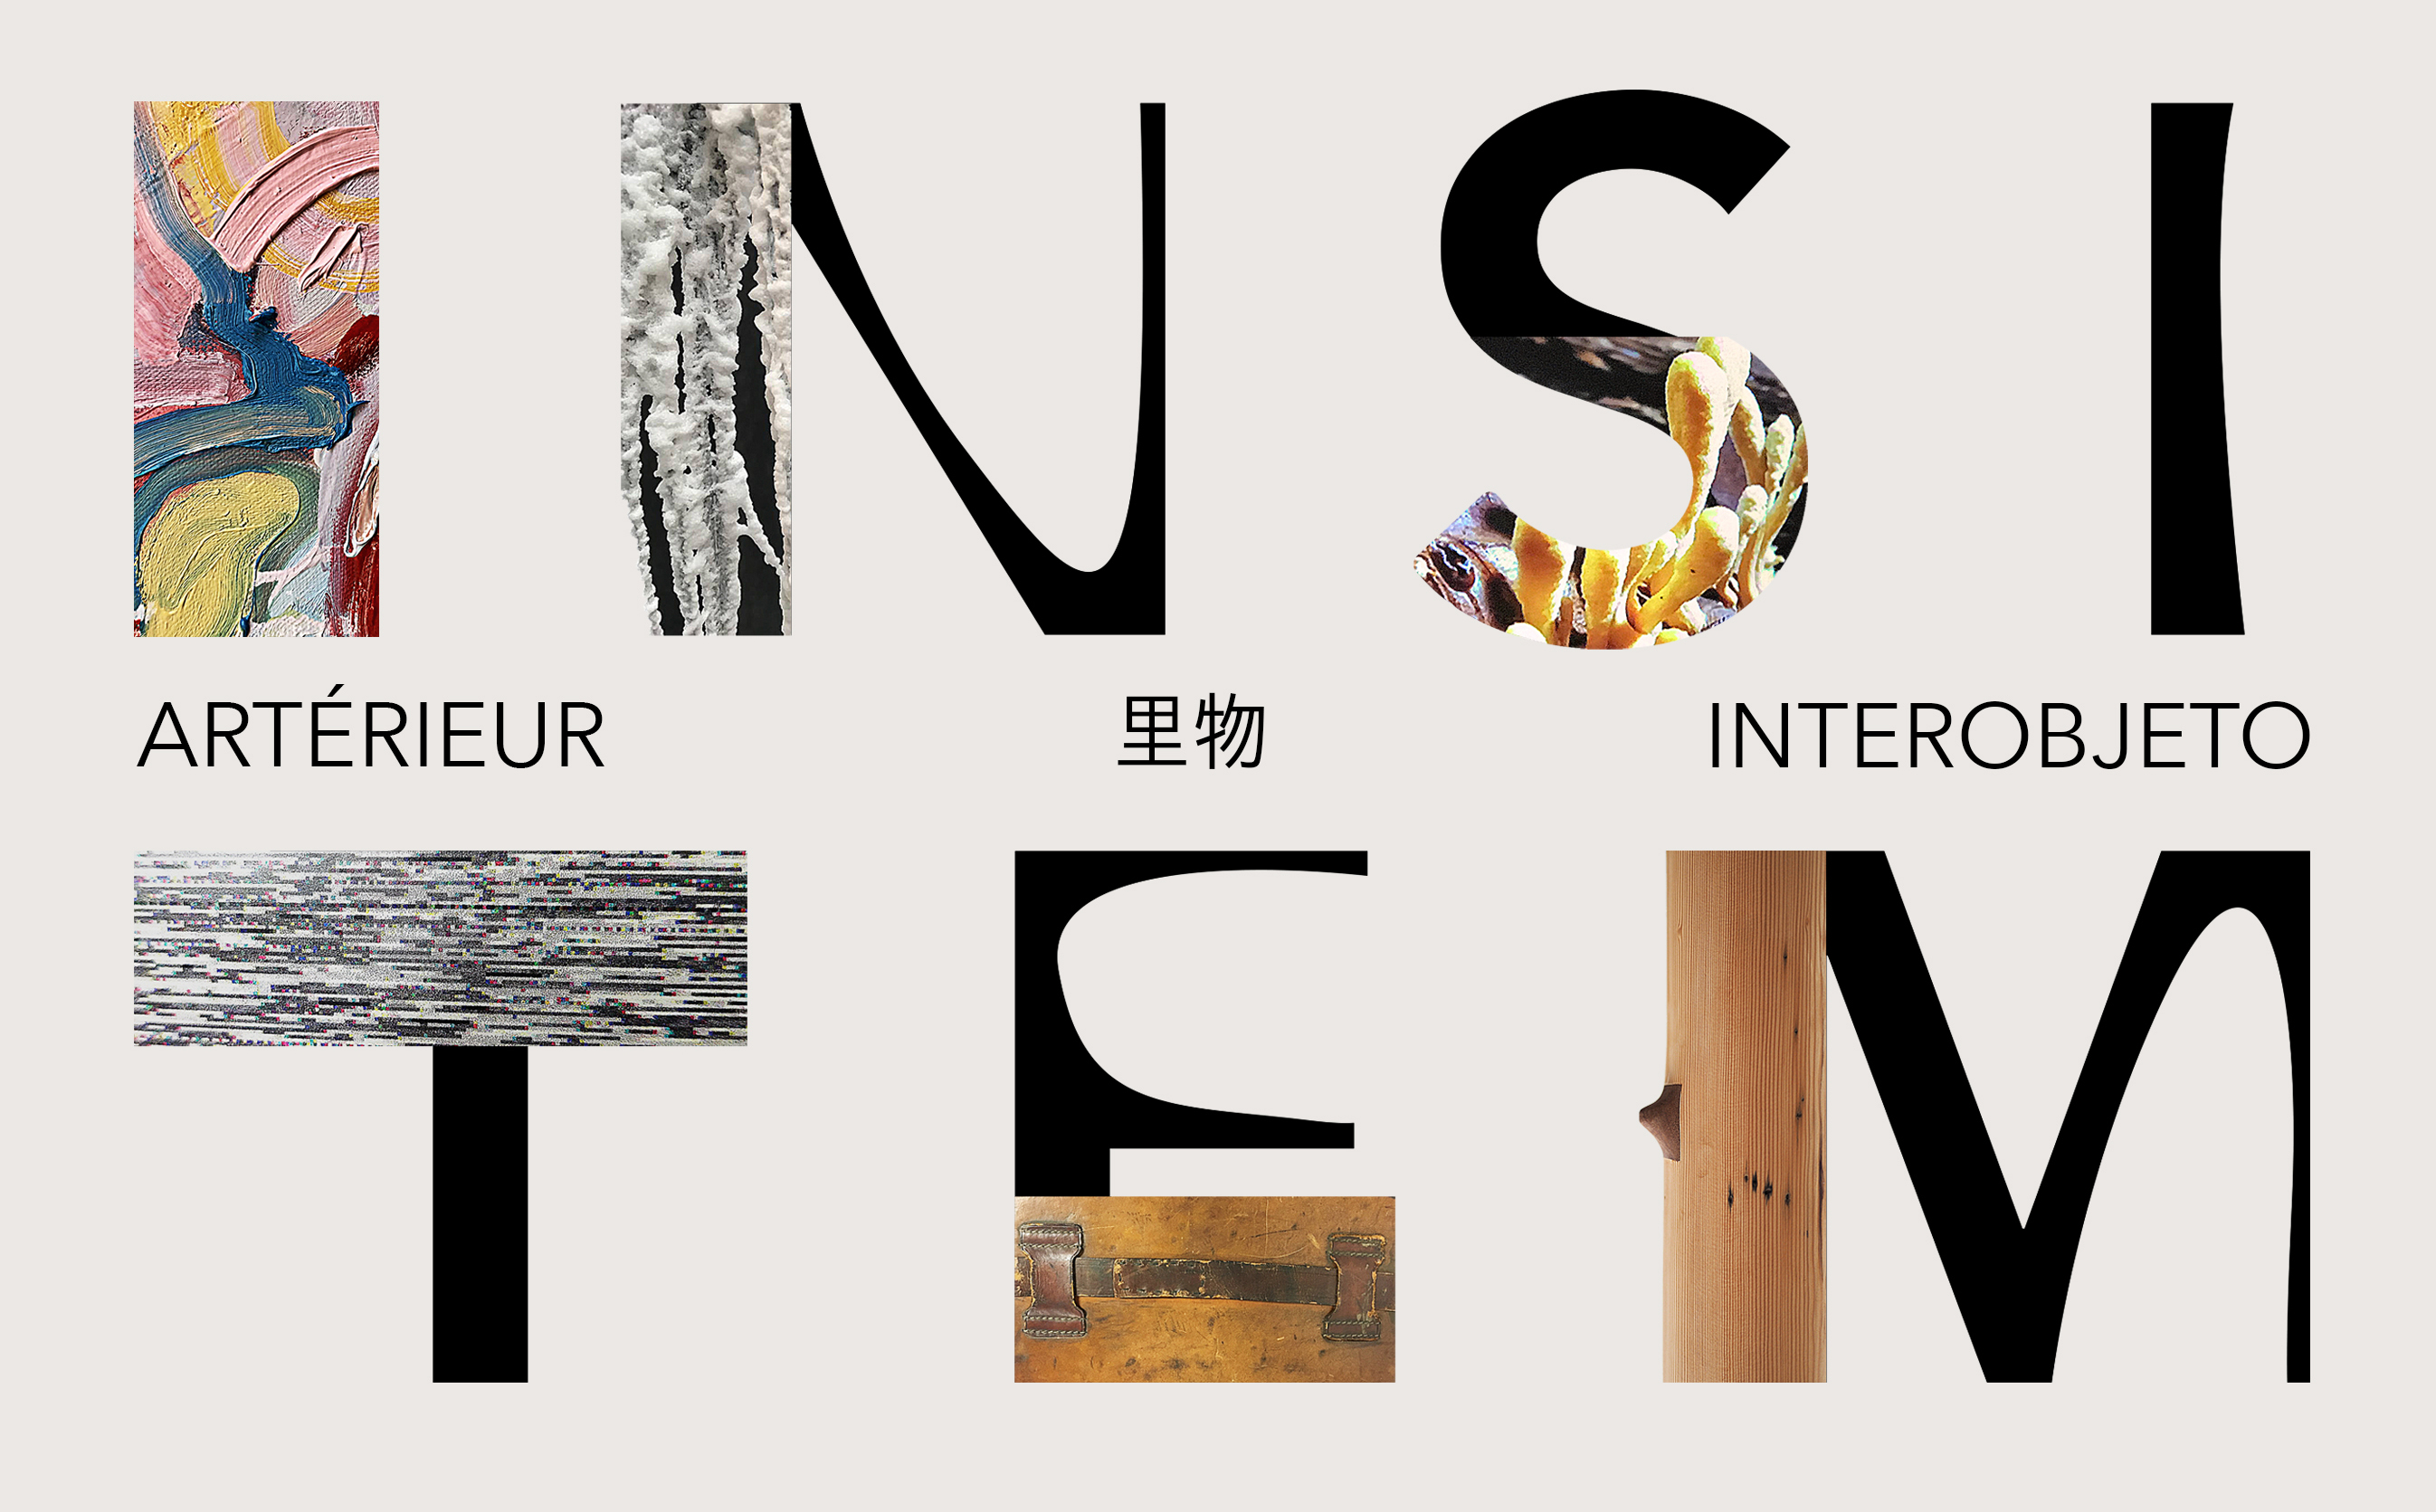 Insitem:  The 2019 Master of Fine Arts Graduates Exhibitions